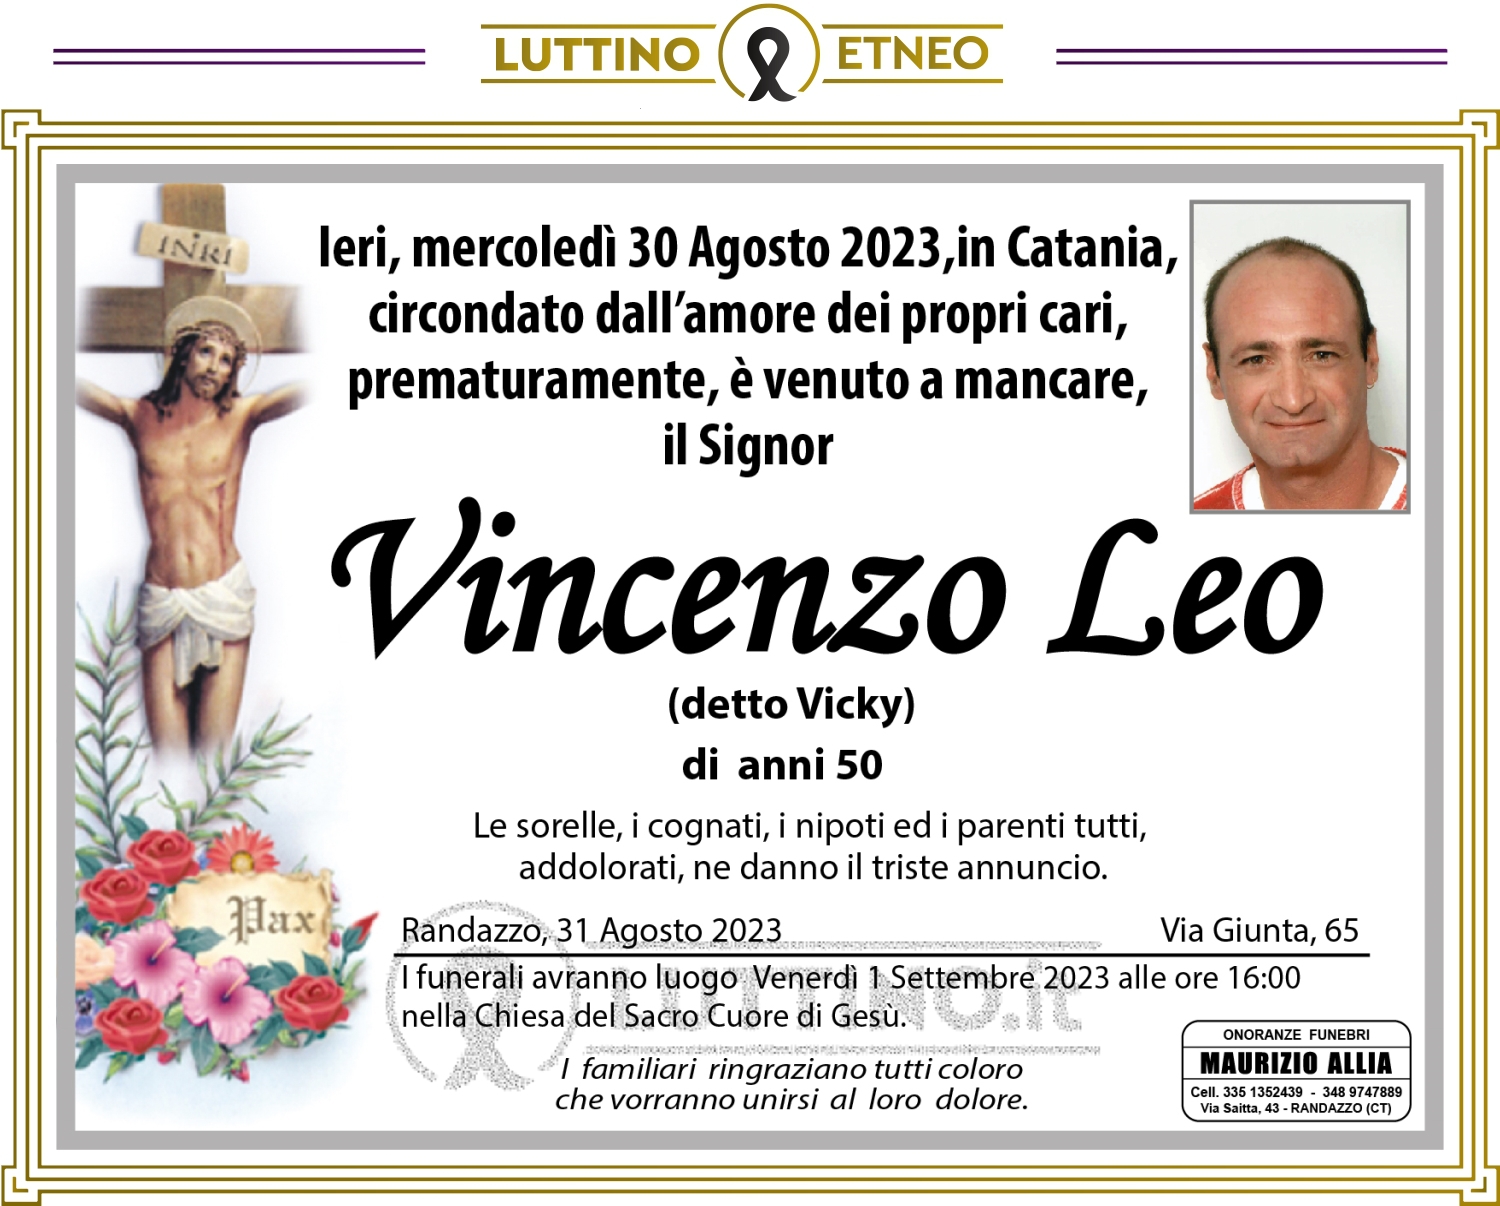 Vincenzo Leo